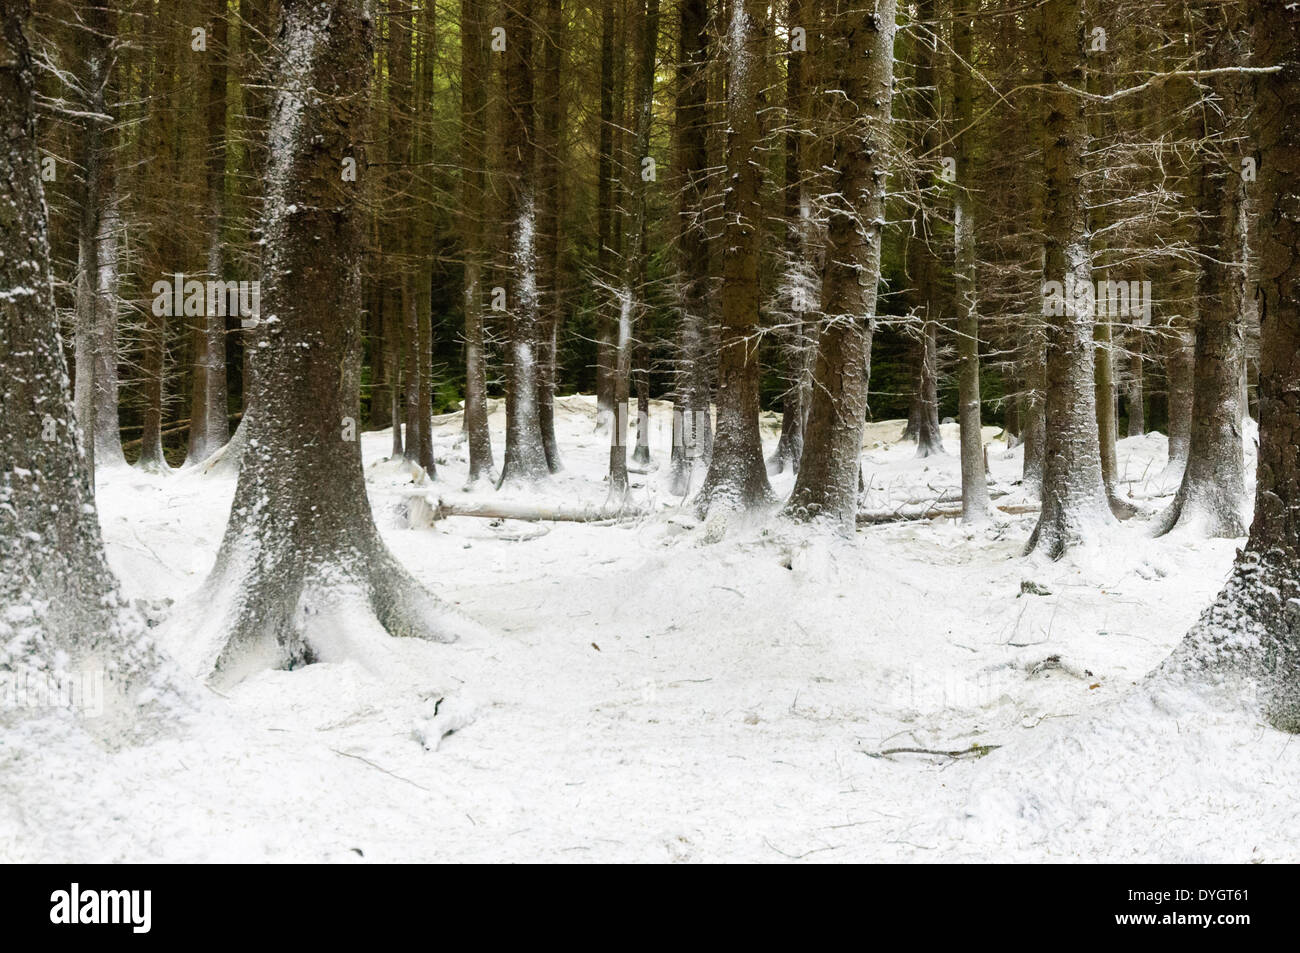 Tollymore Forest, L'Irlande du Nord, couverte de neige artificielle dans le tournage du premier épisode de Game of Thrones Banque D'Images